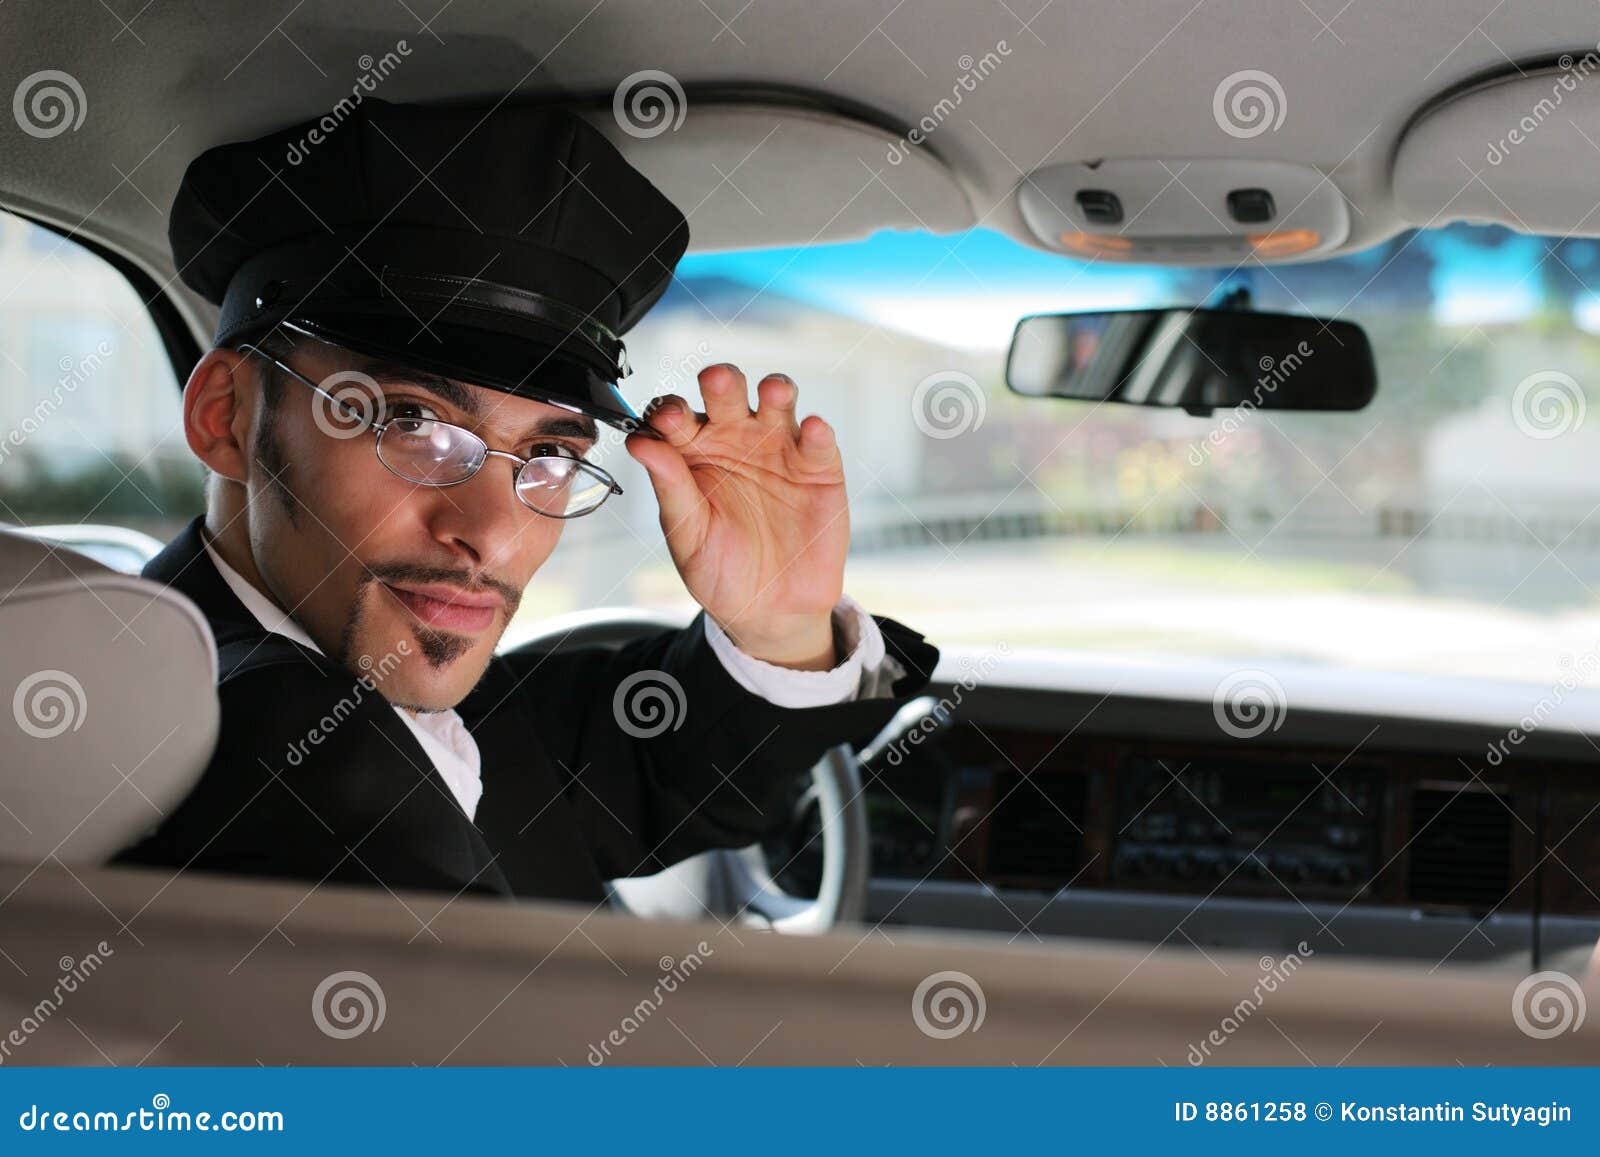 limo driver